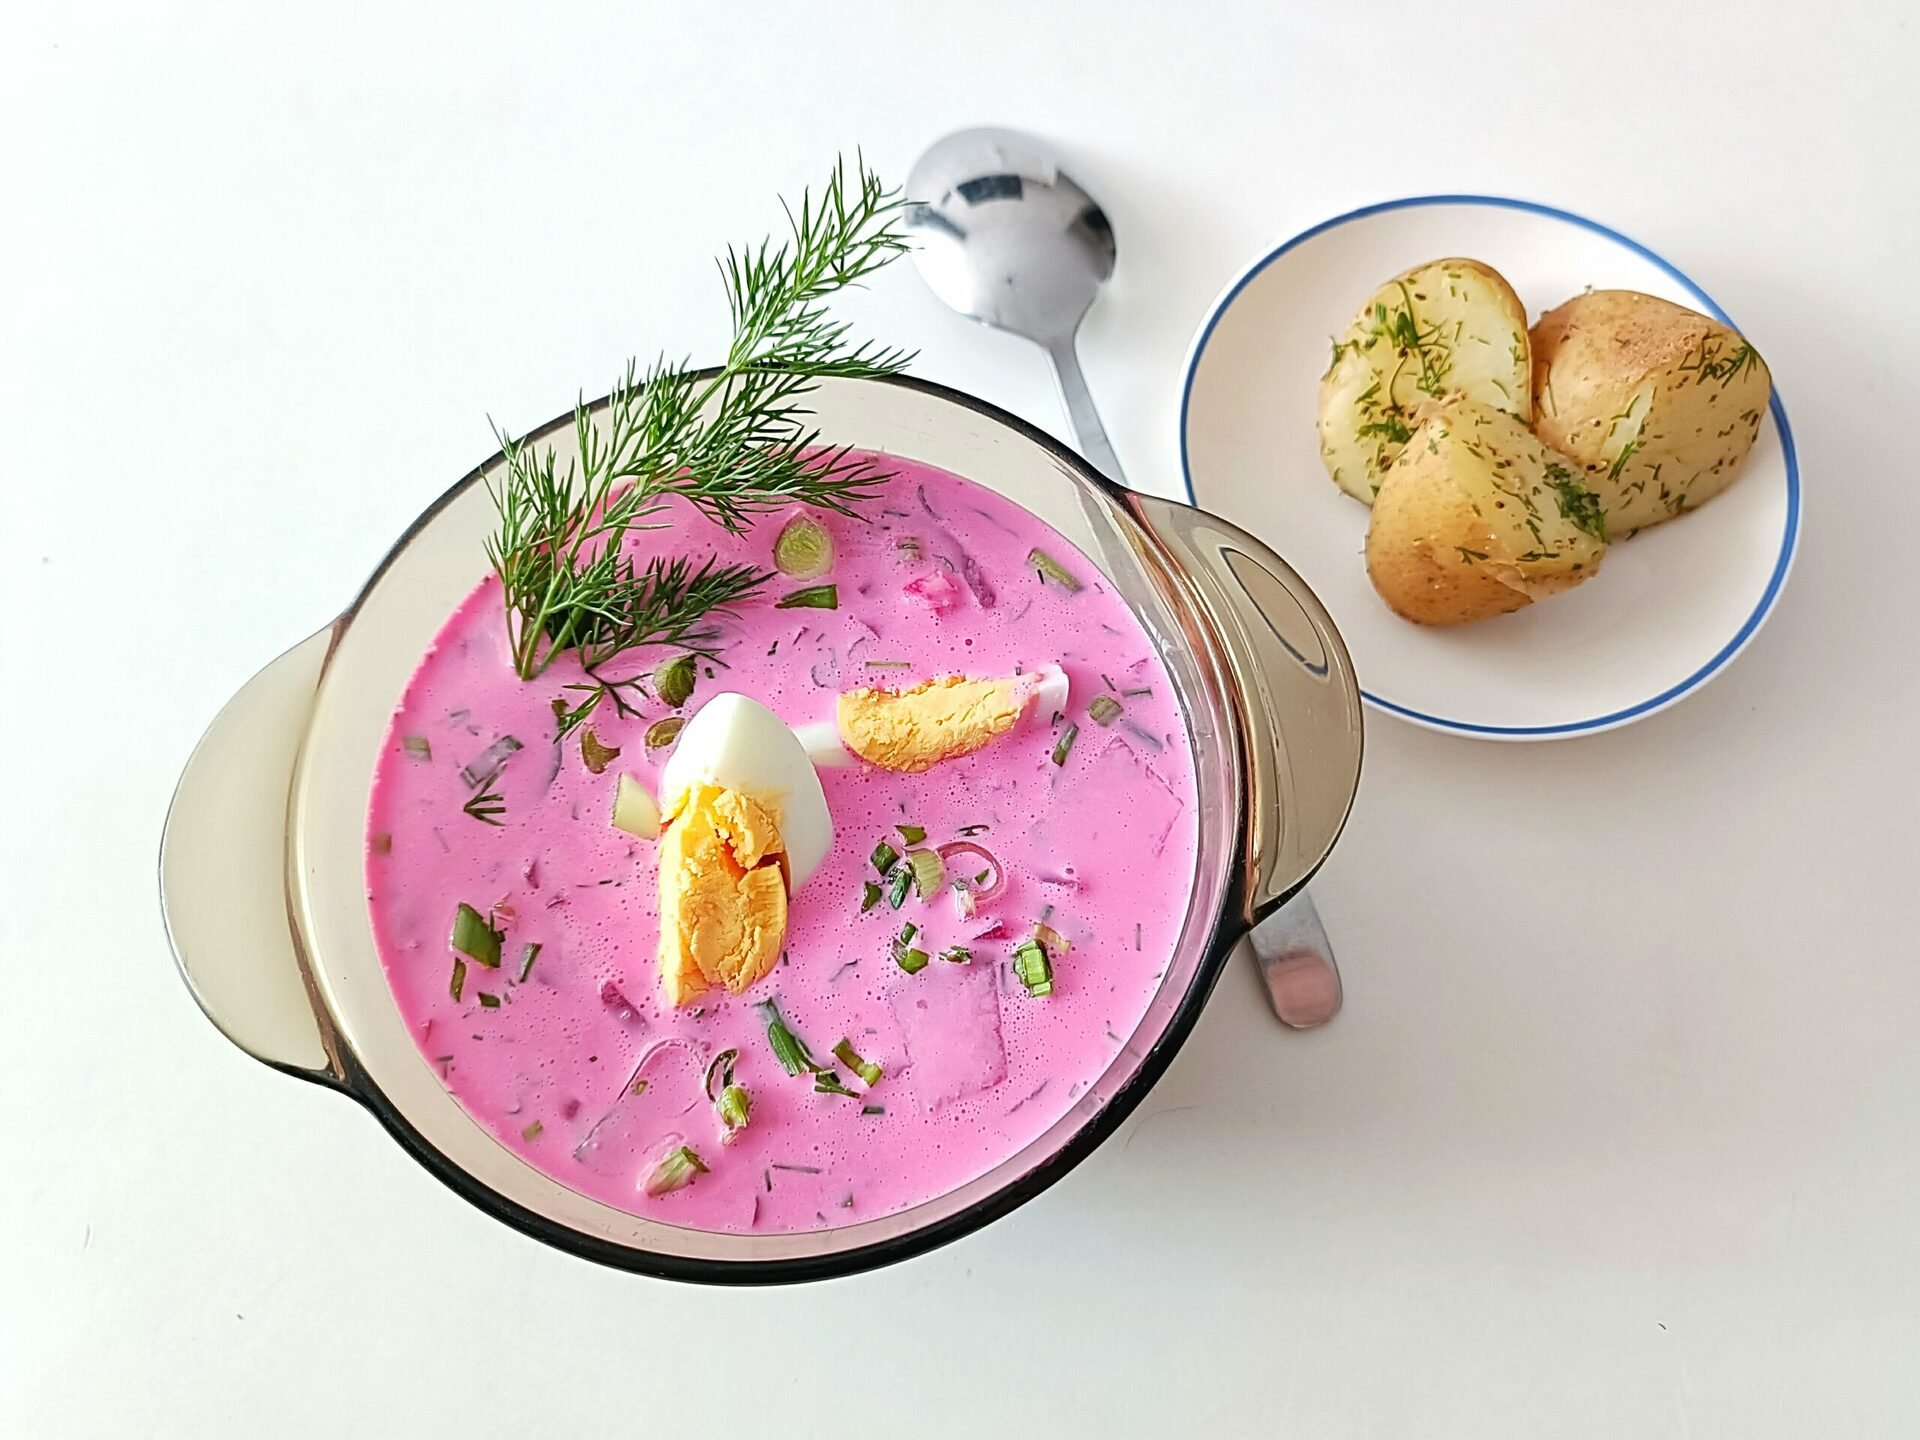 Šaltibarščiai - viena populiariausių sriubų Lietuvoje